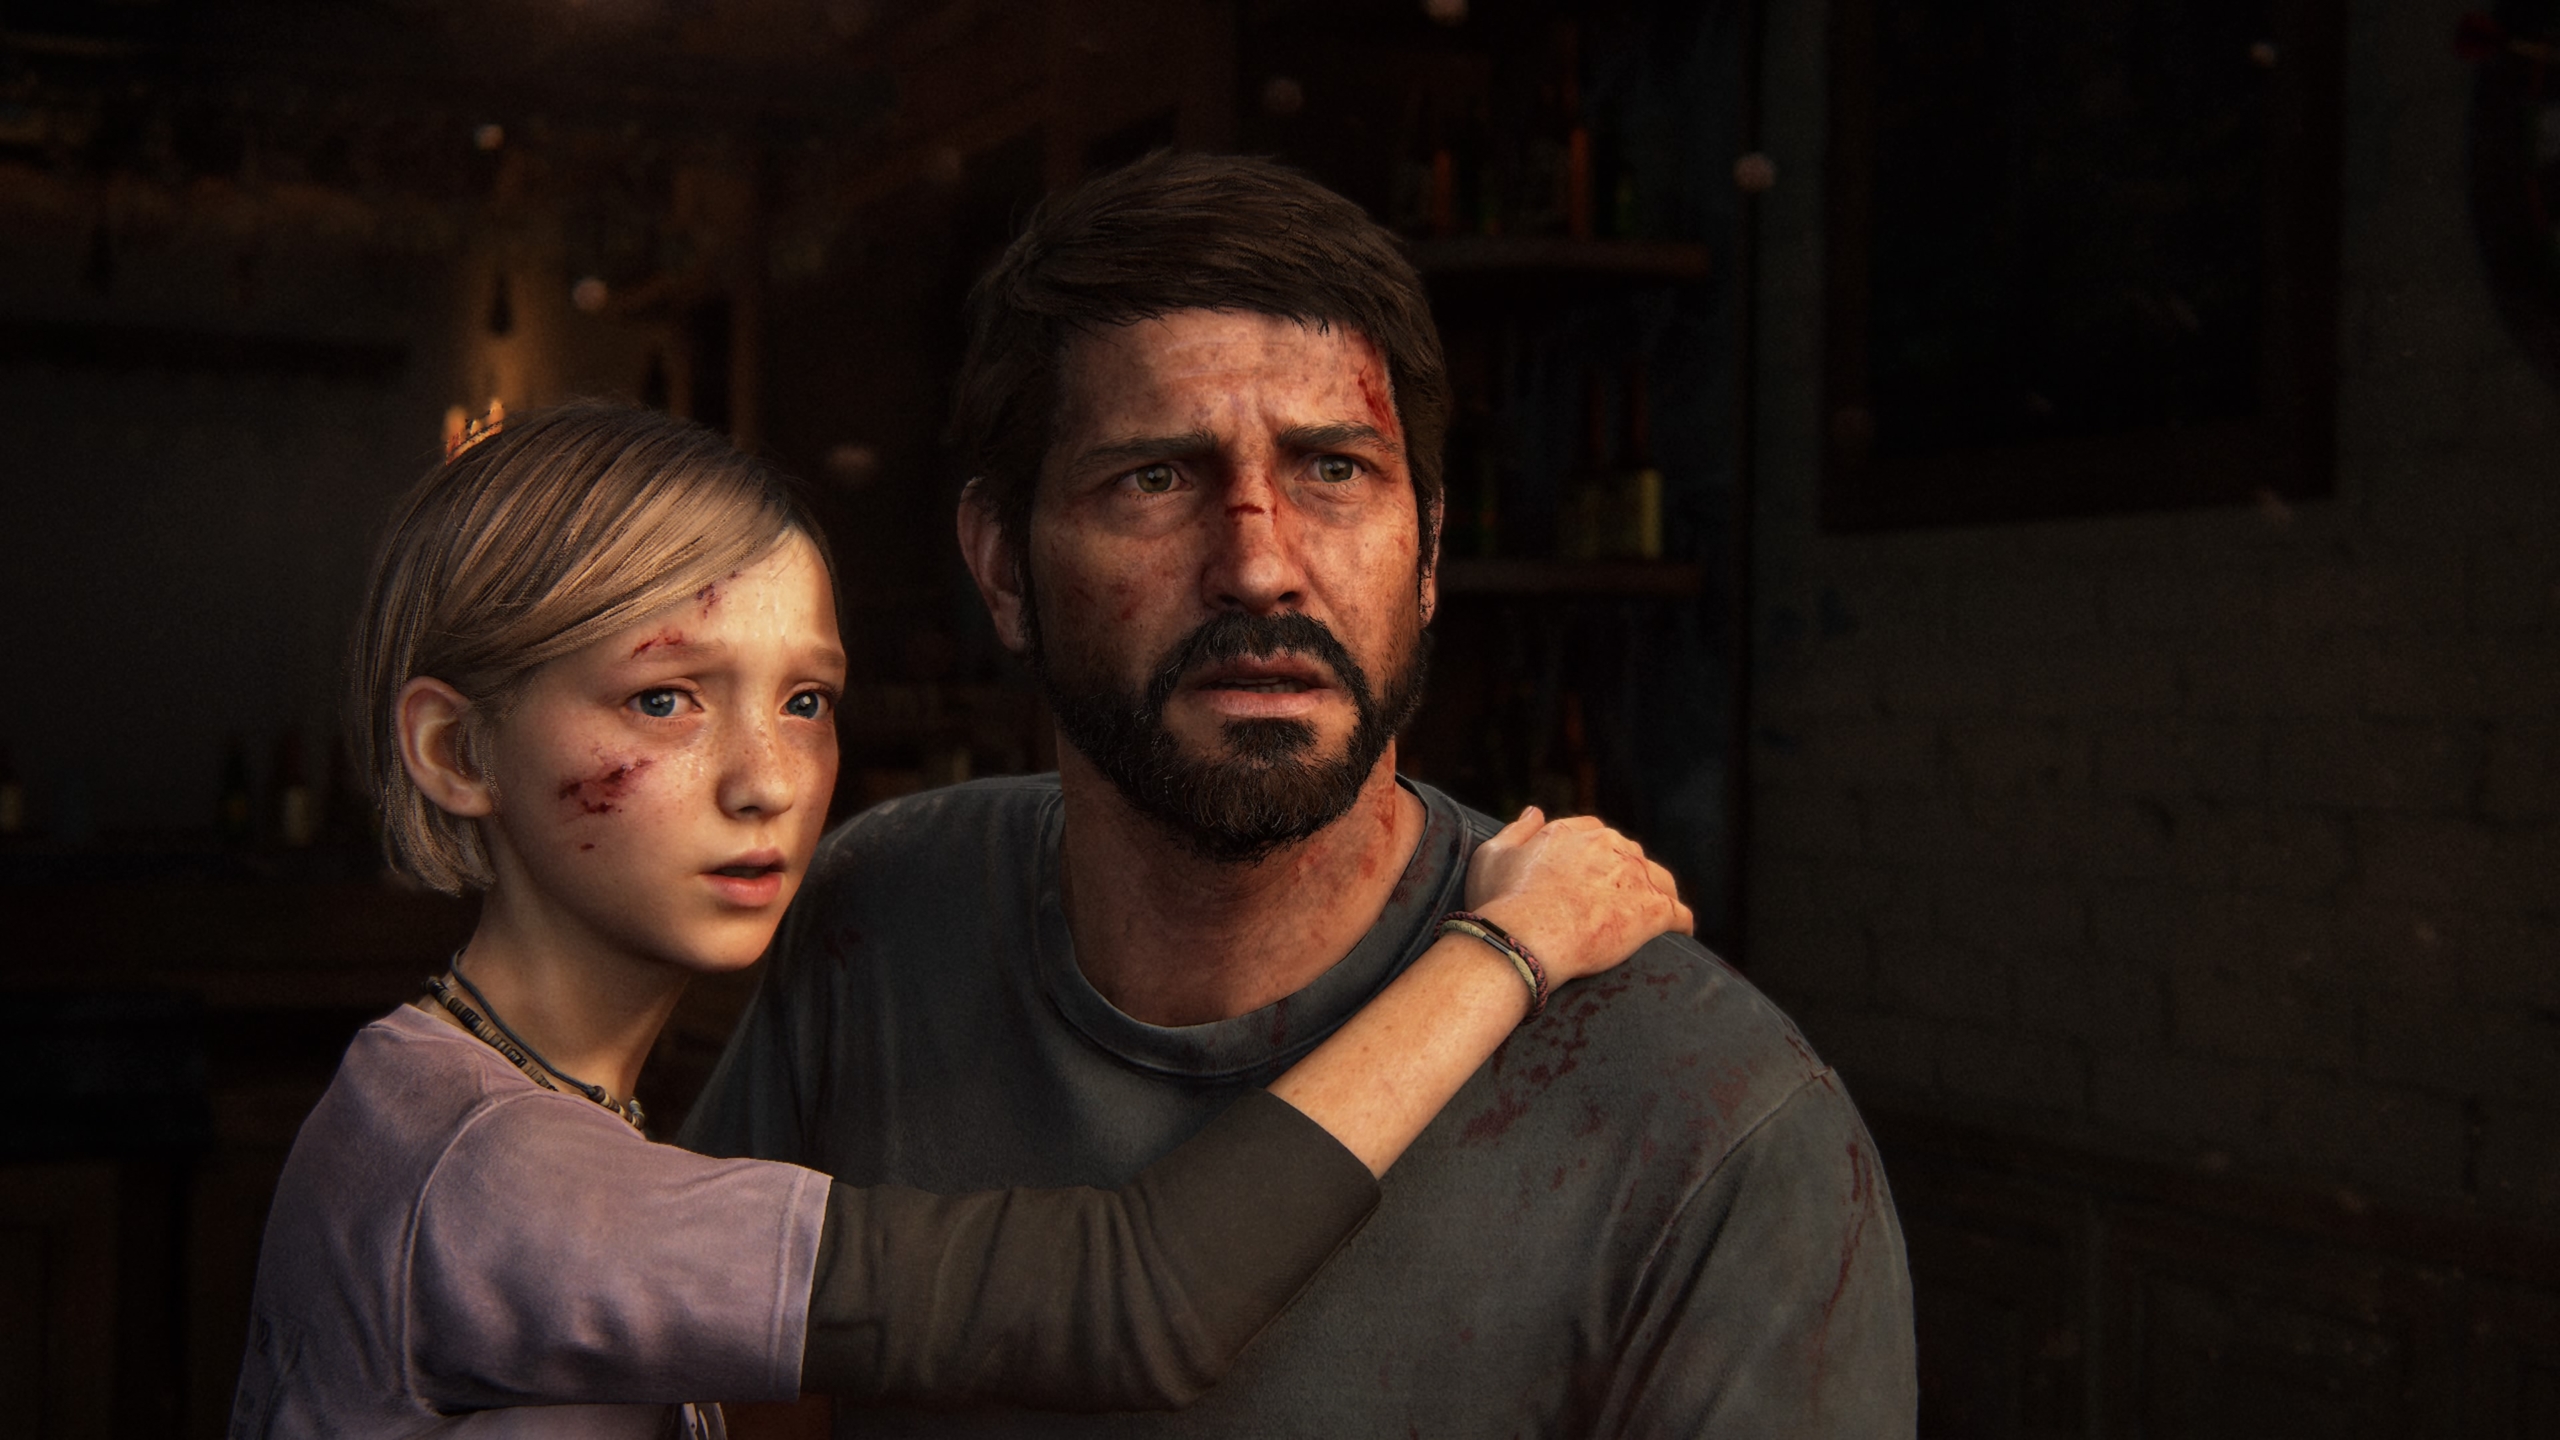 Das Problem von The Last of Us Part I ist nicht Price, sondern Hybris